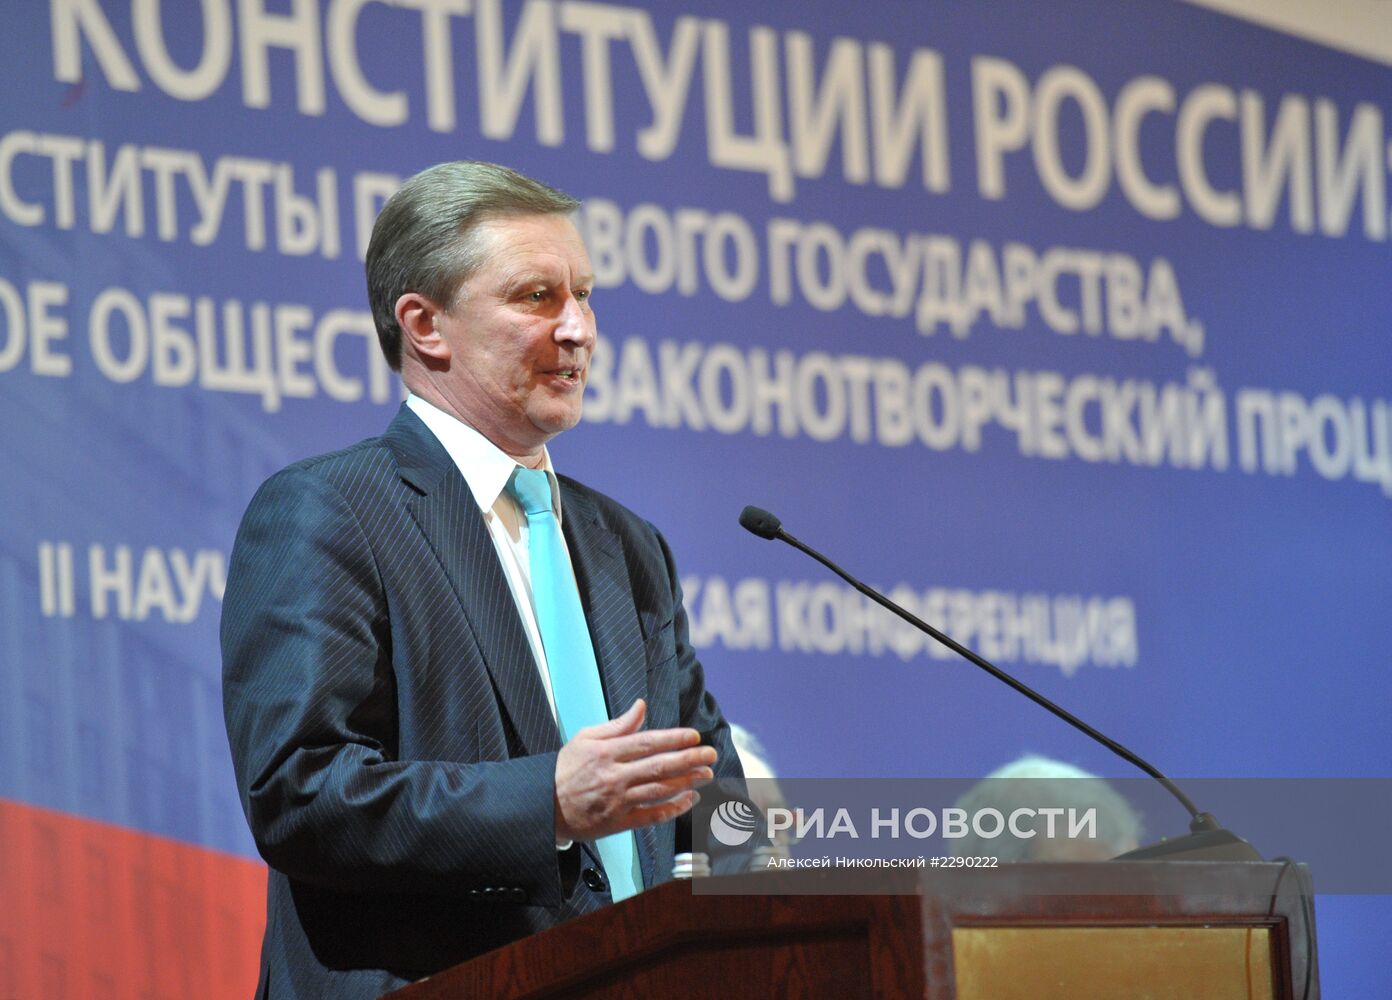 С.Иванов принял участие в конференции "20 лет Конституции России